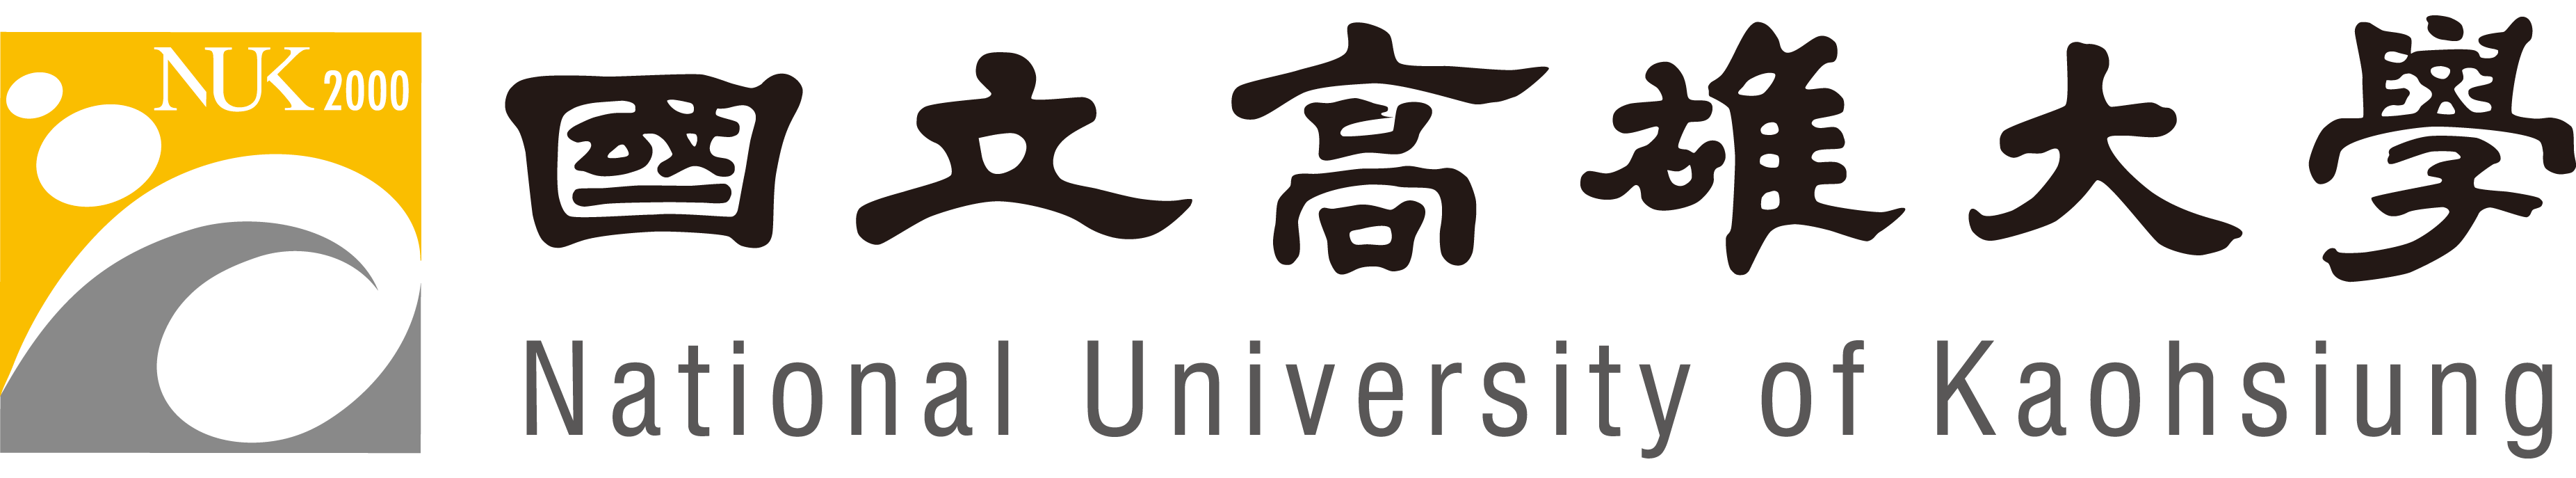 國立高雄大學logo